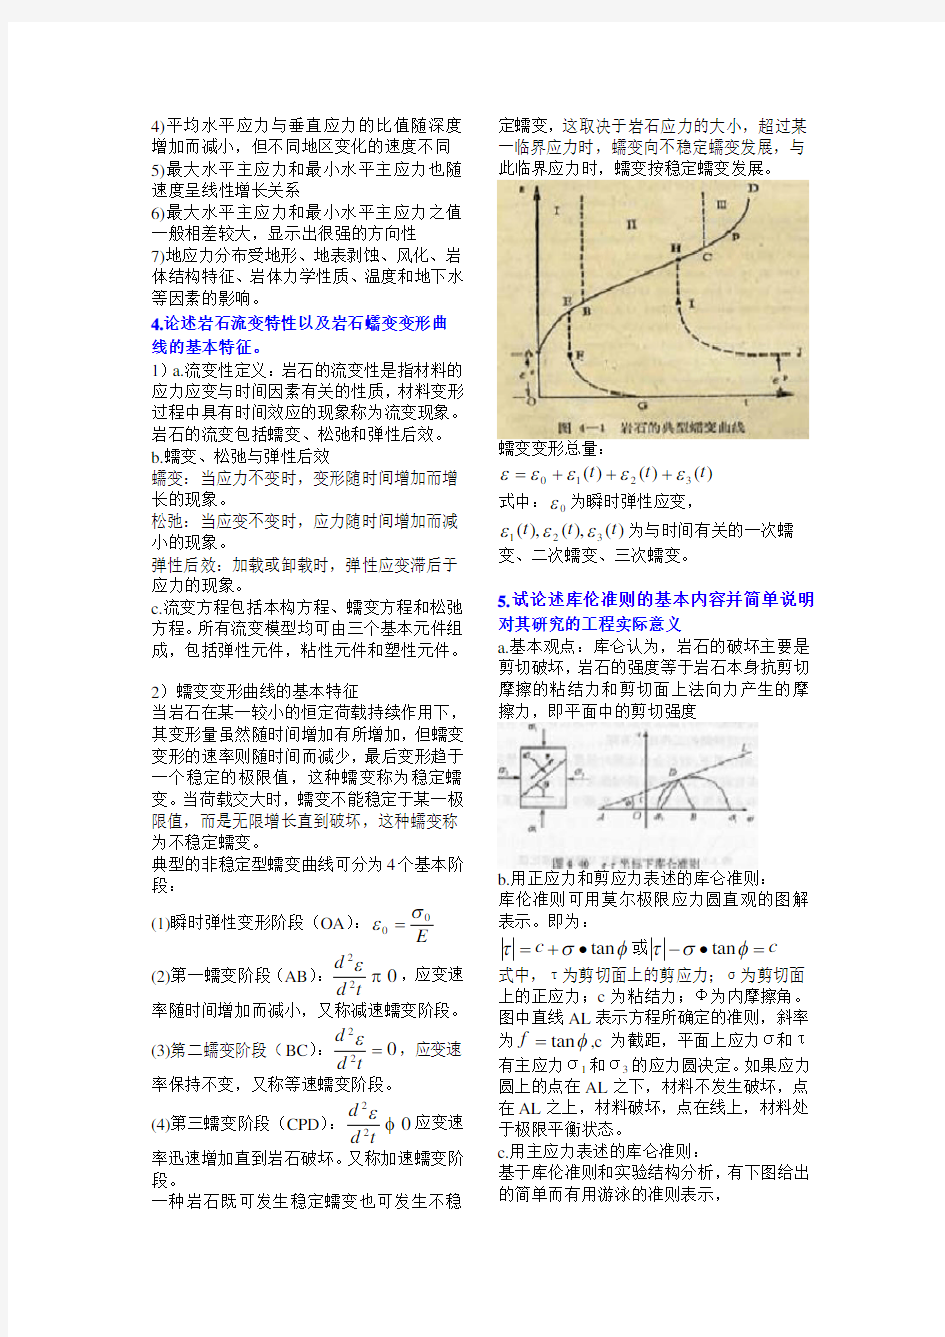 (完整版)重庆大学岩石力学往年题